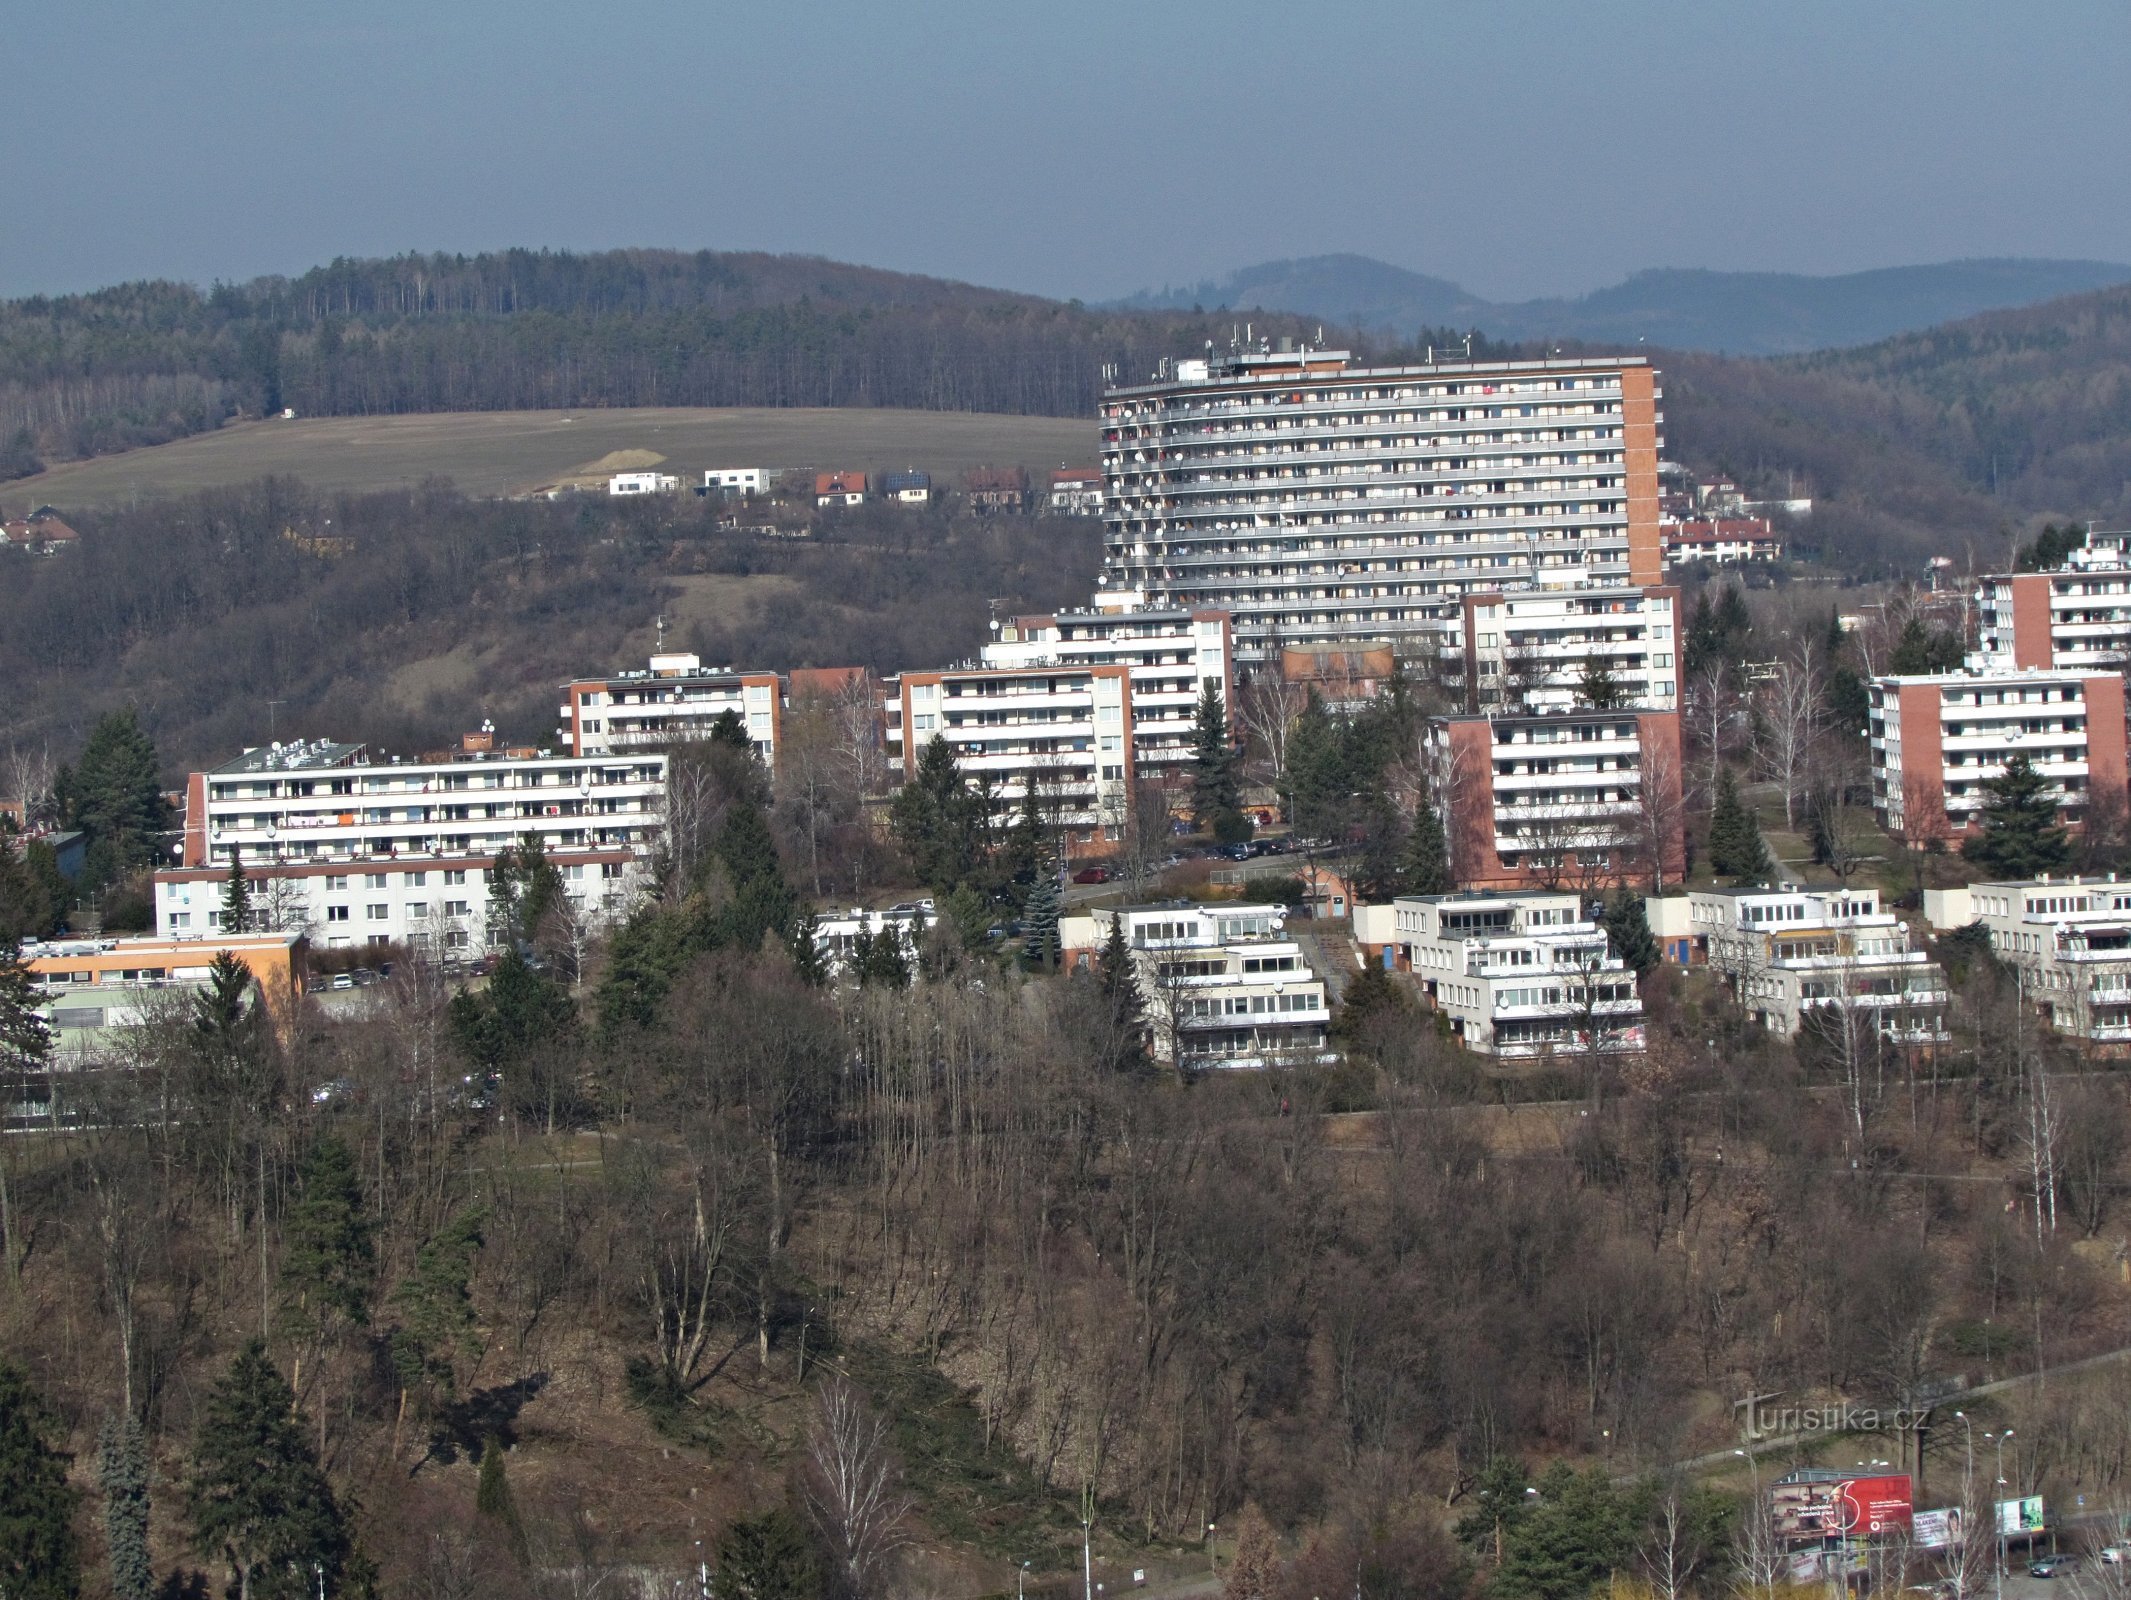 Une visite au gratte-ciel et via Barabáš à Zlín